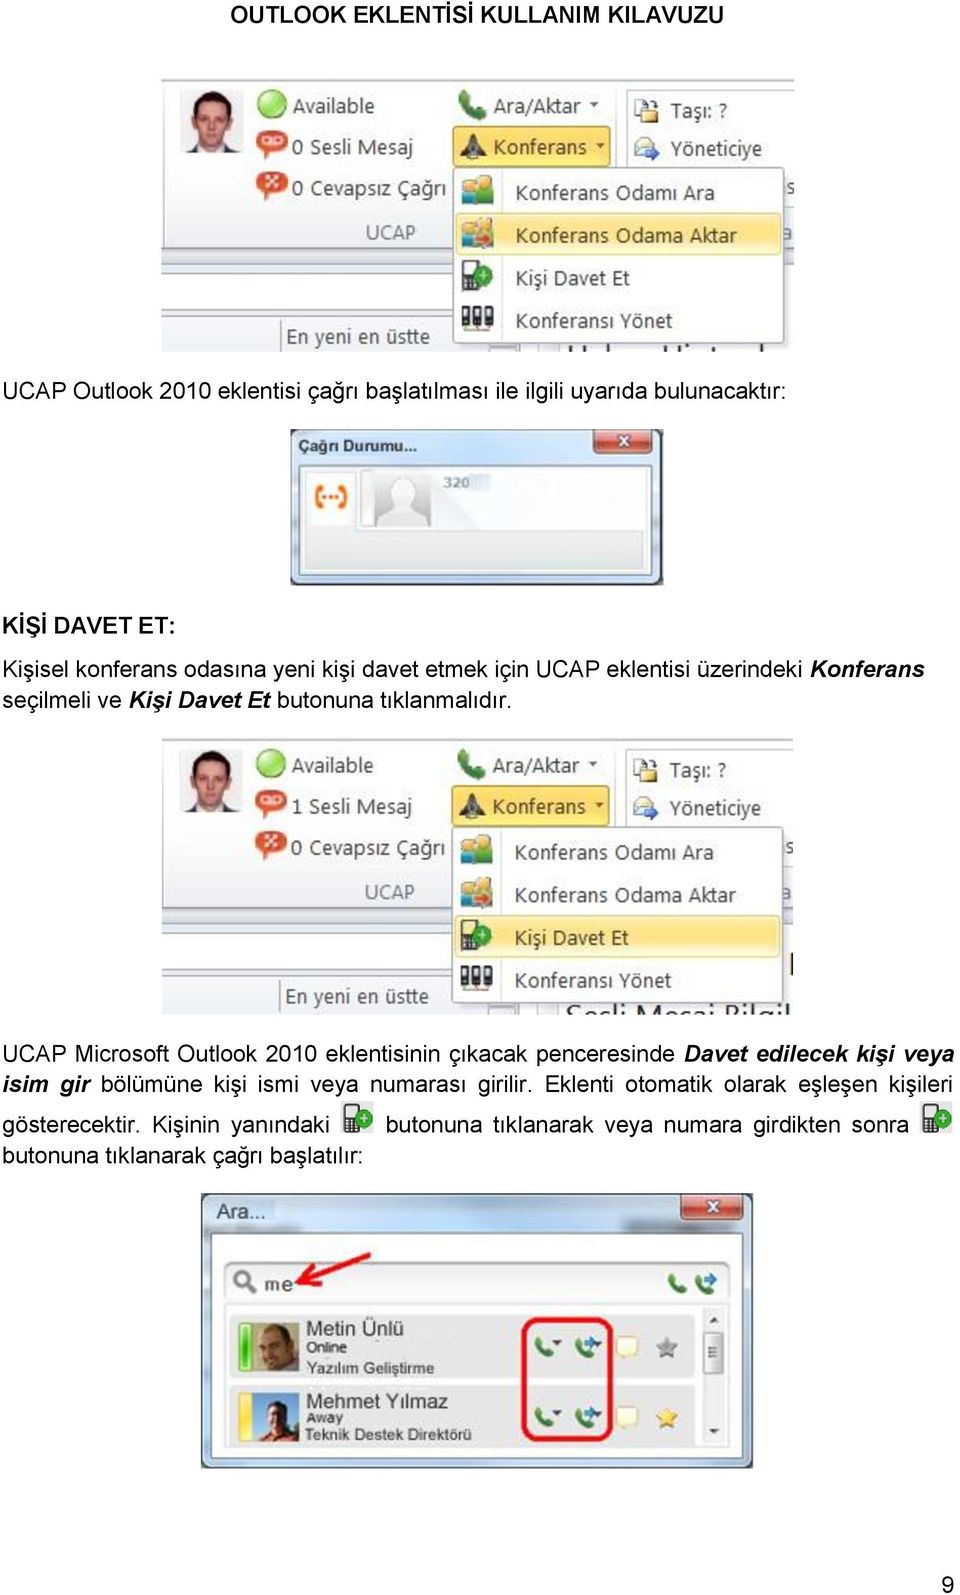 UCAP Microsoft Outlook 2010 eklentisinin çıkacak penceresinde Davet edilecek kişi veya isim gir bölümüne kişi ismi veya numarası